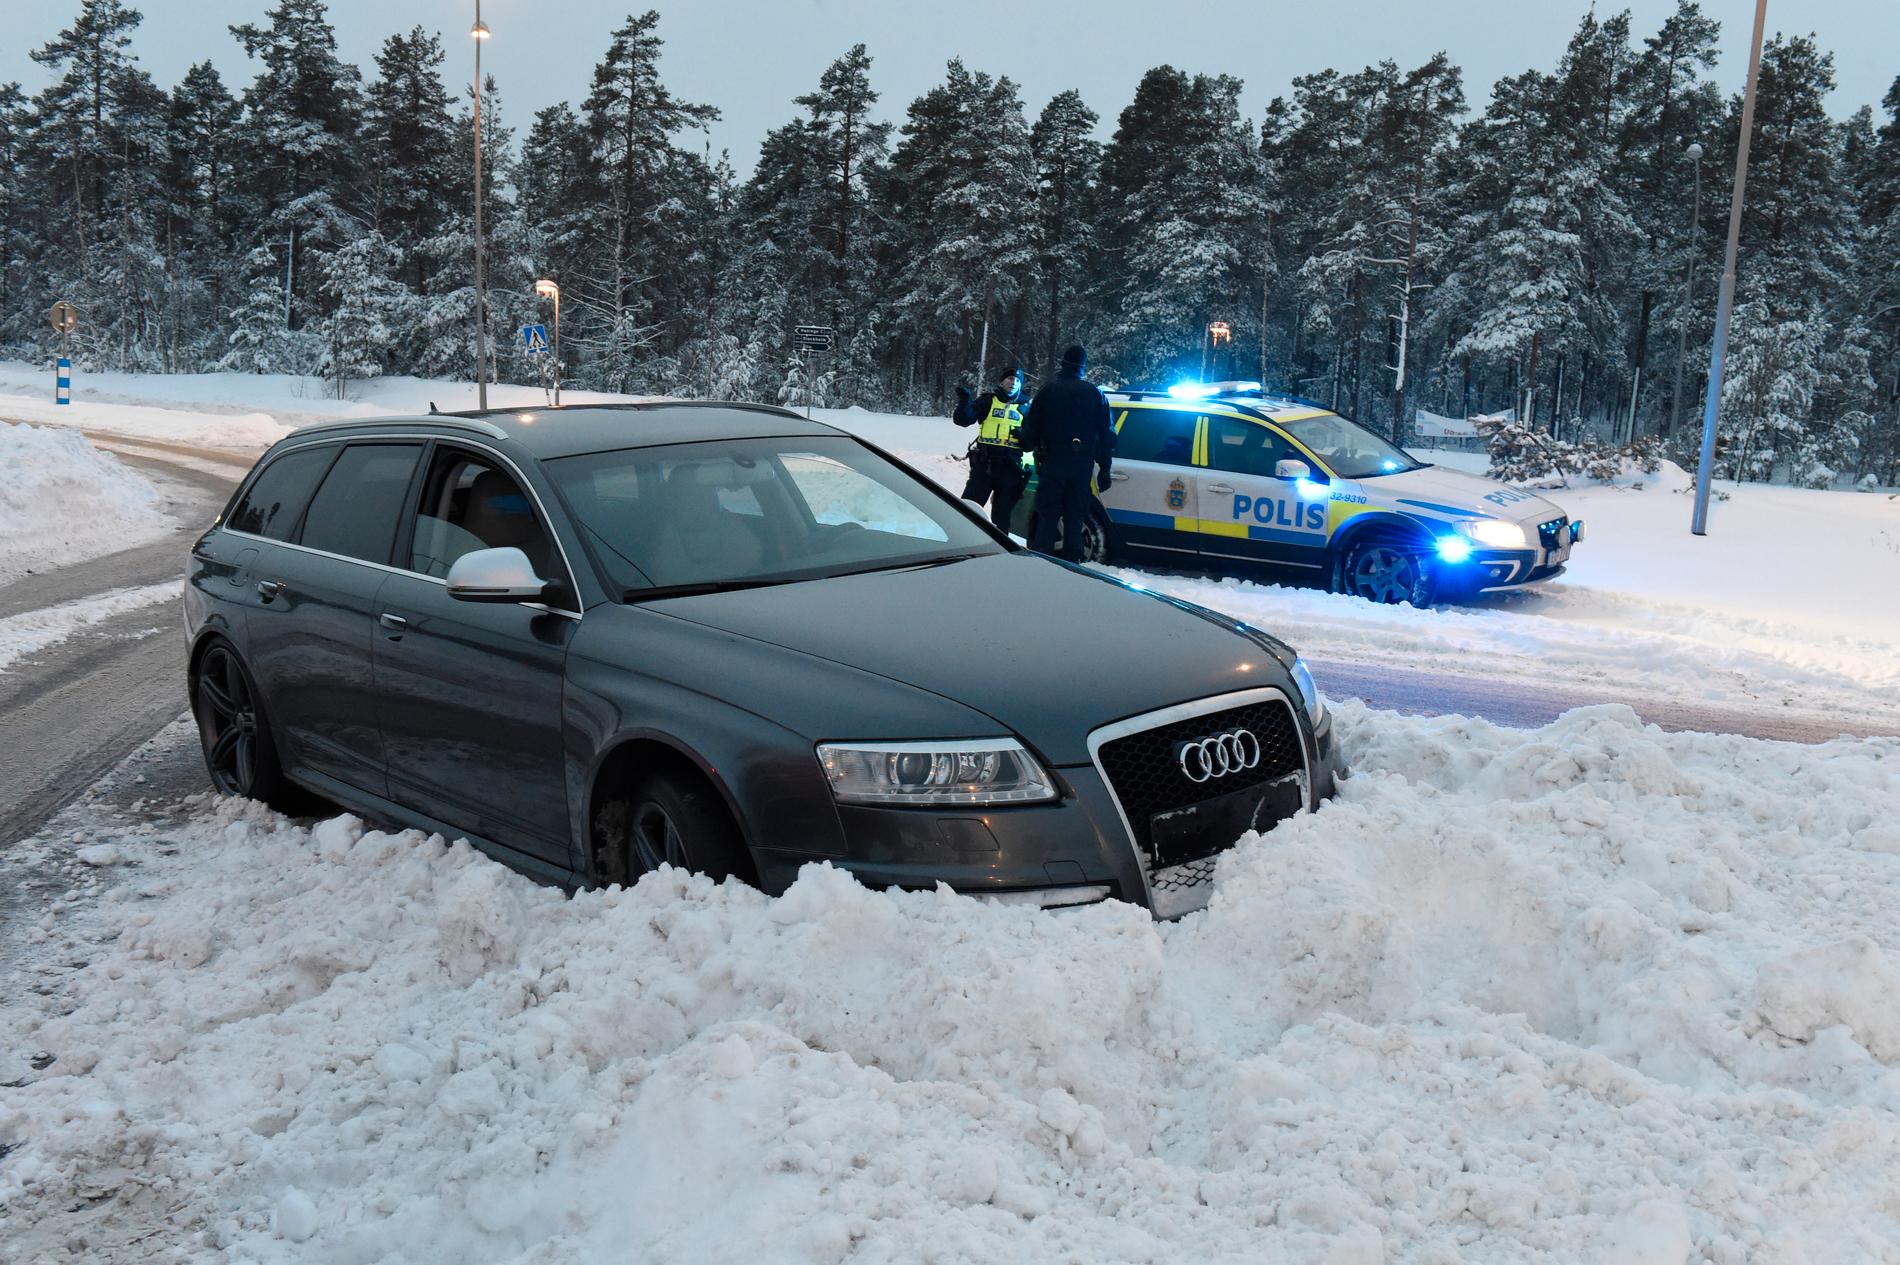 En stulen Audi hamnade i snödriva efter bilrån i januari.